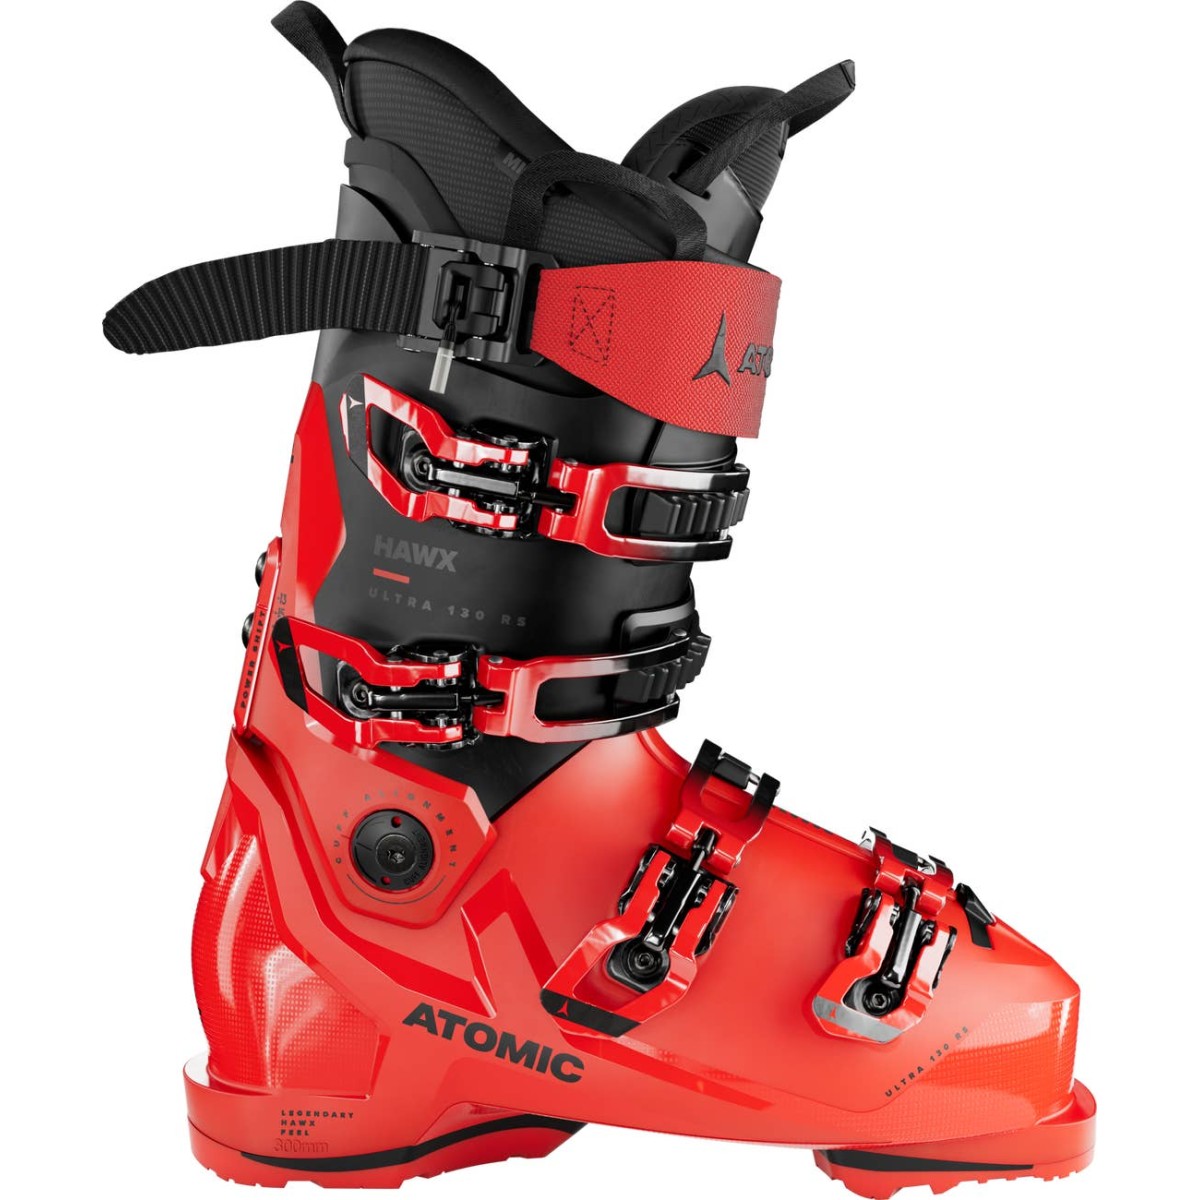 ATOMIC HAWX ULTRA 130 RS GW alpine ski boots - red/black